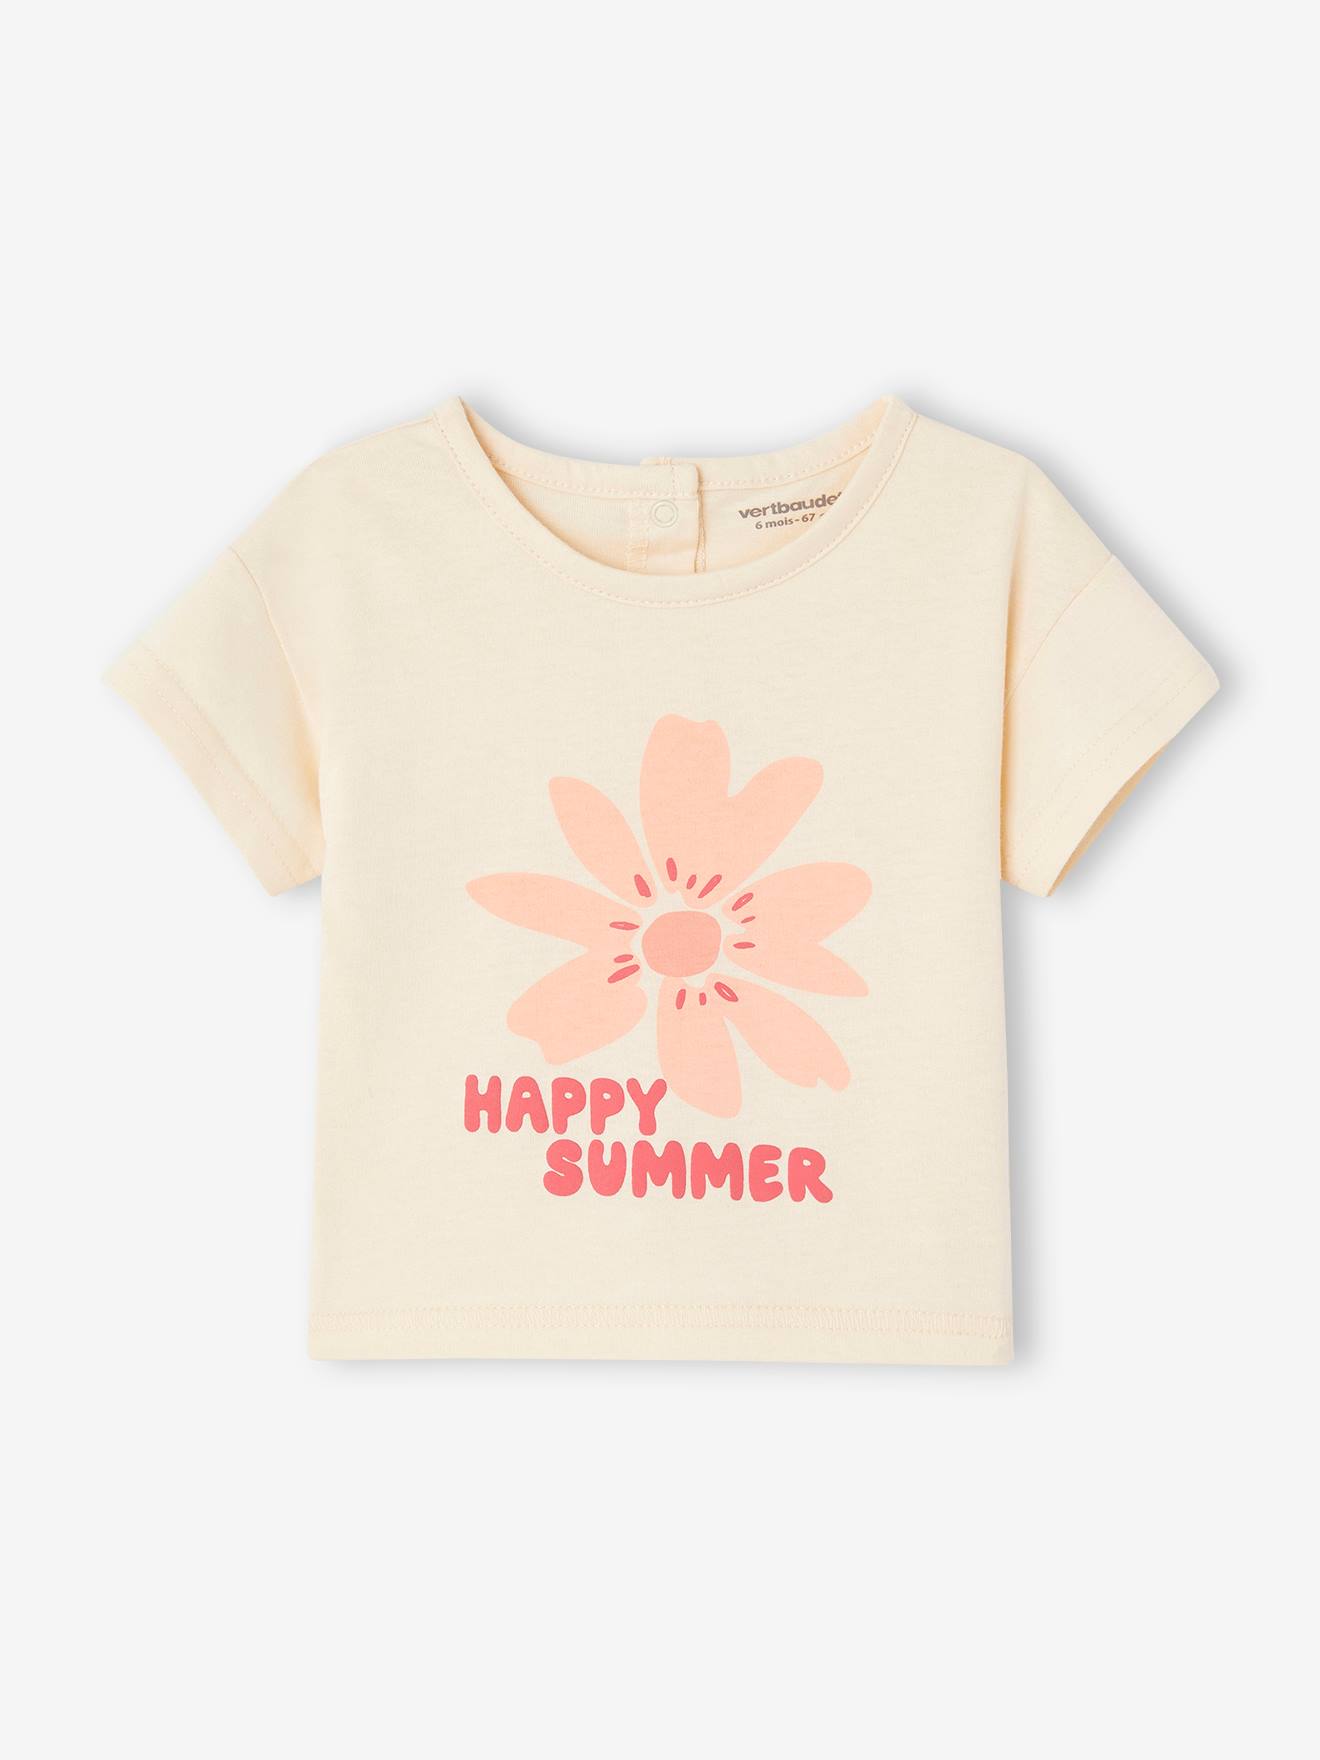 Babyshirt "Happy summer" met korte mouwen ecru